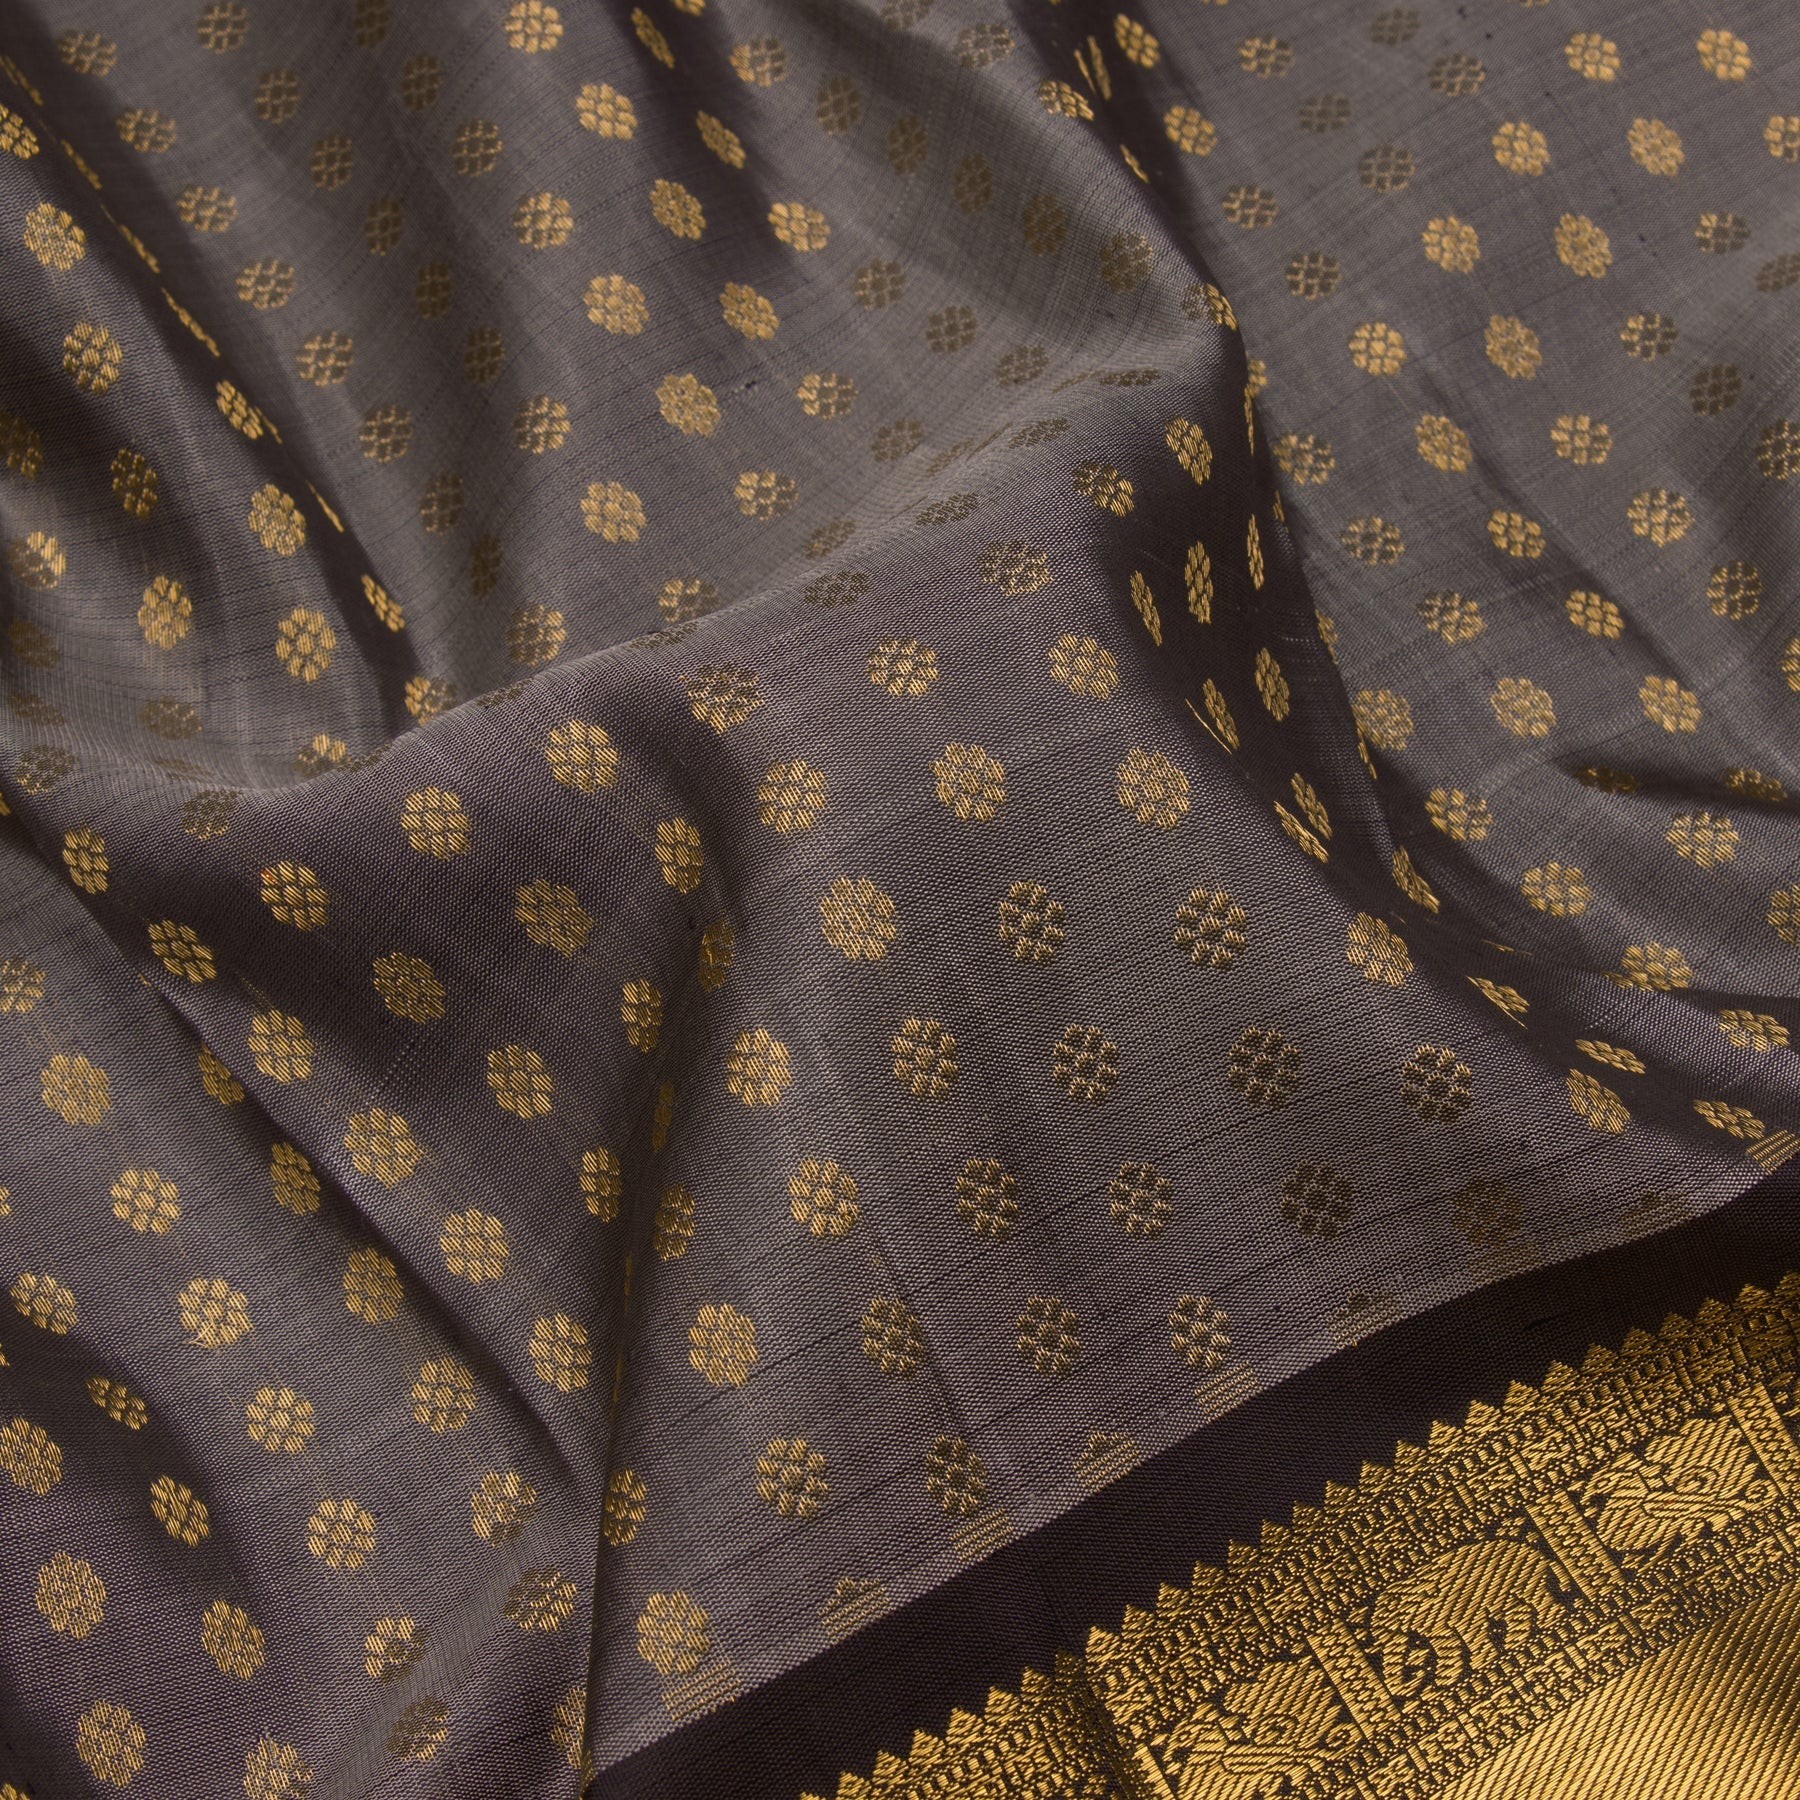 Kanakavalli Kanjivaram Silk Sari 22-599-HS001-12306 - Fabric View